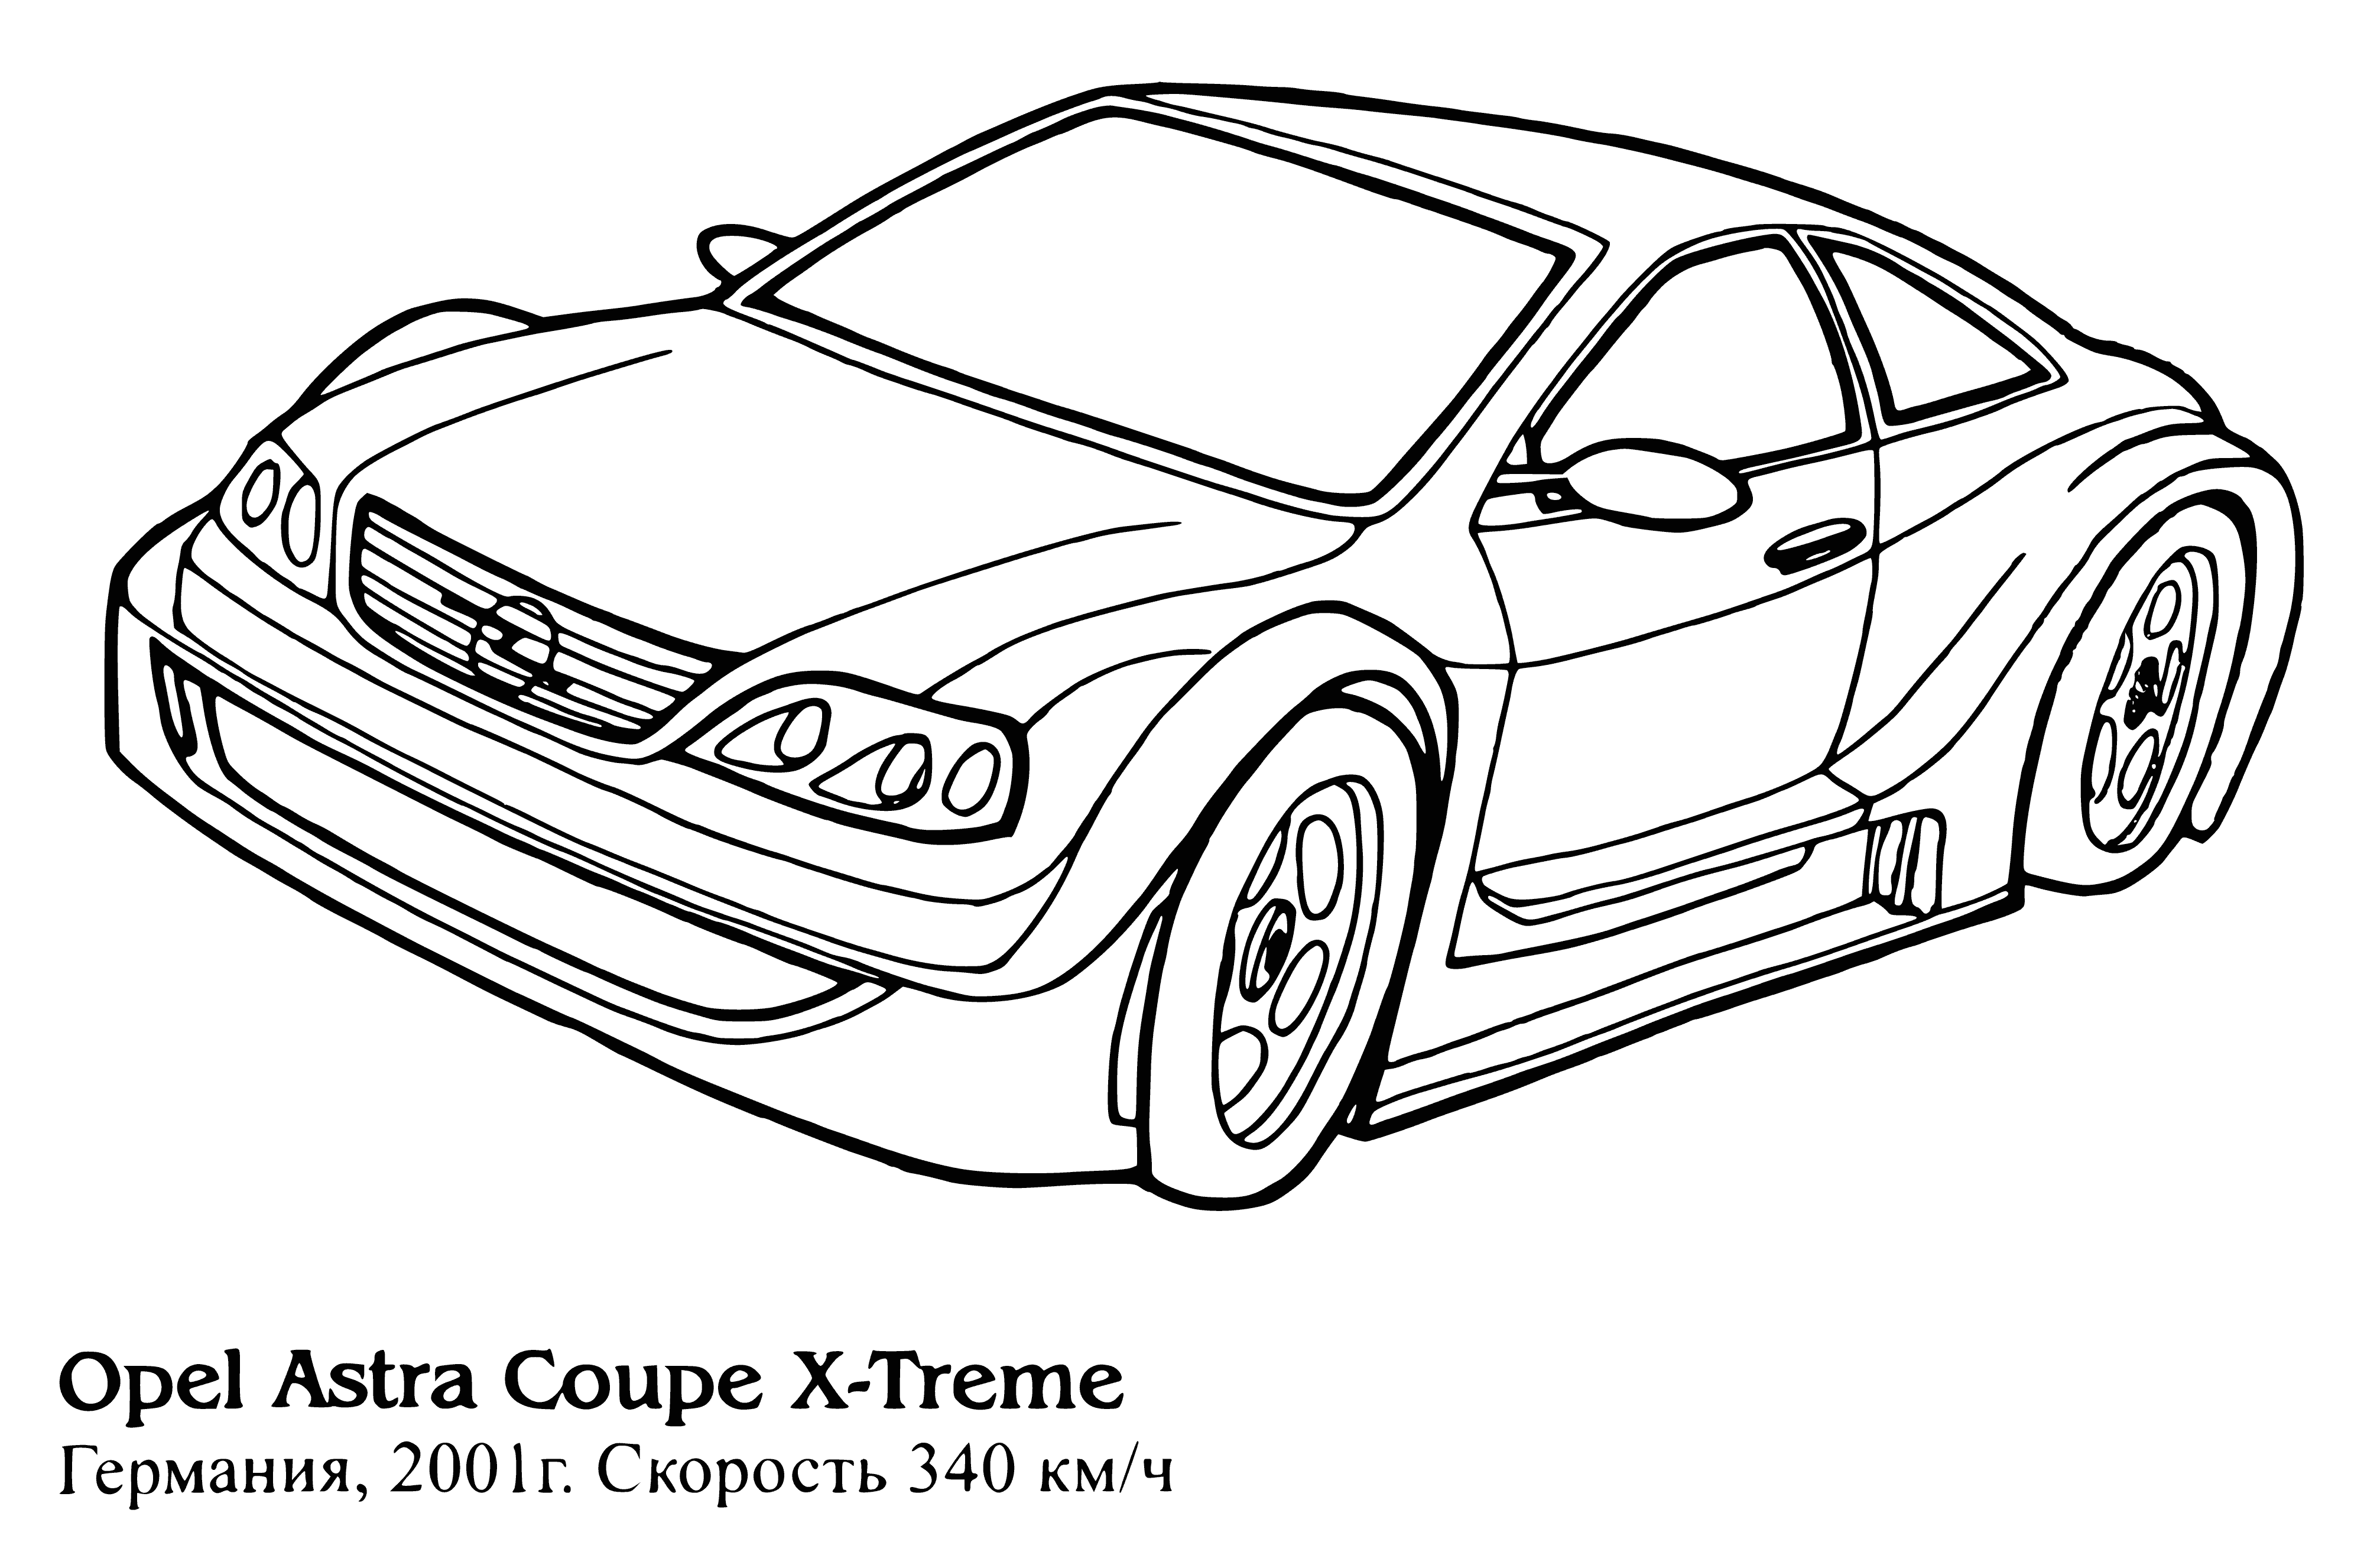 Opel Astra Coupé X-Treme kolorowanka